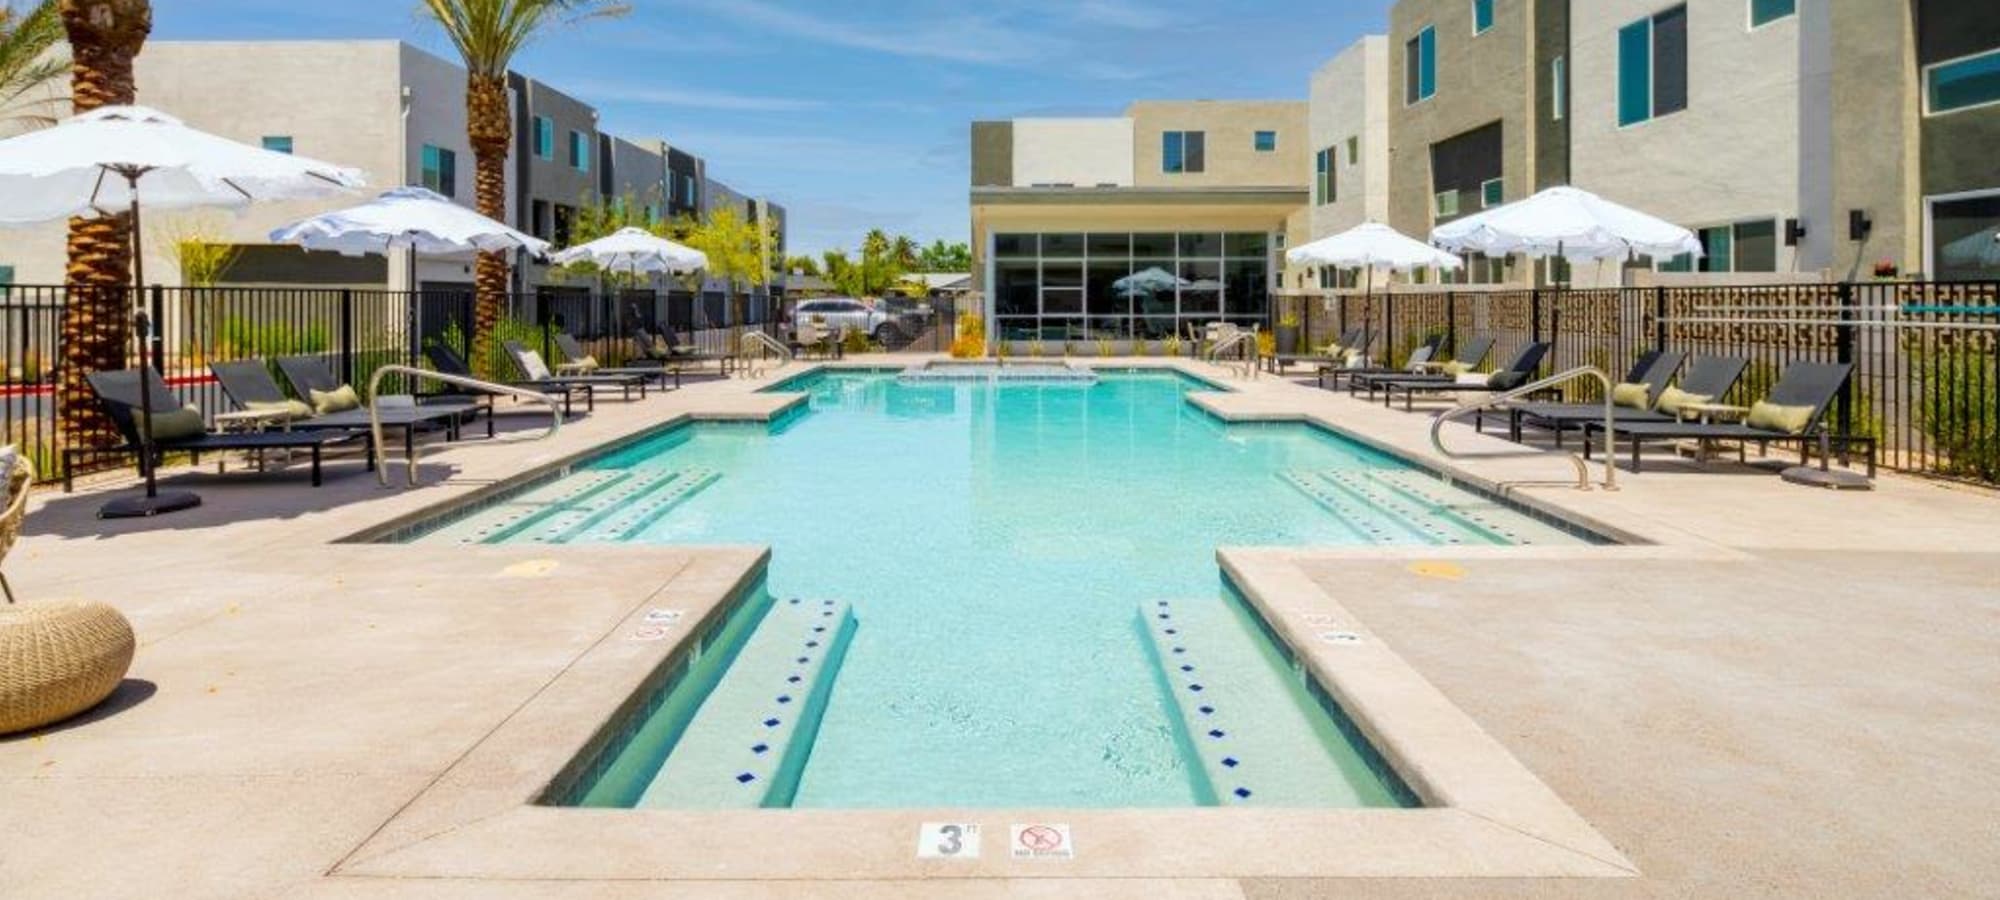 Swimming Pool at Novella at Biltmore in Phoenix, Arizona